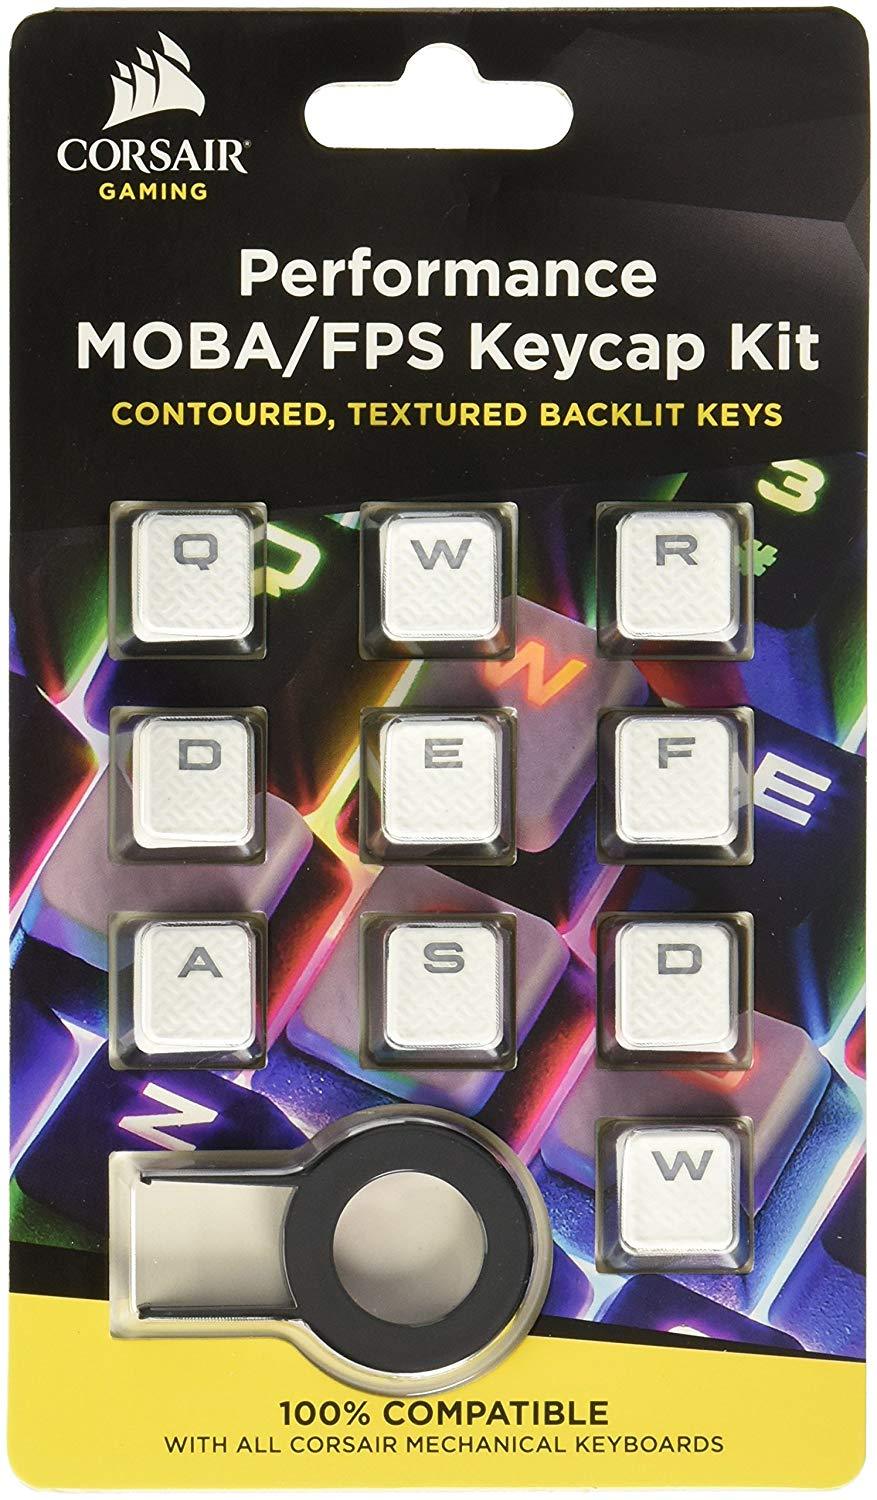 Corsair Gaming Performance FPS MOBA Keycap Kit - White - Store 974 | ستور ٩٧٤